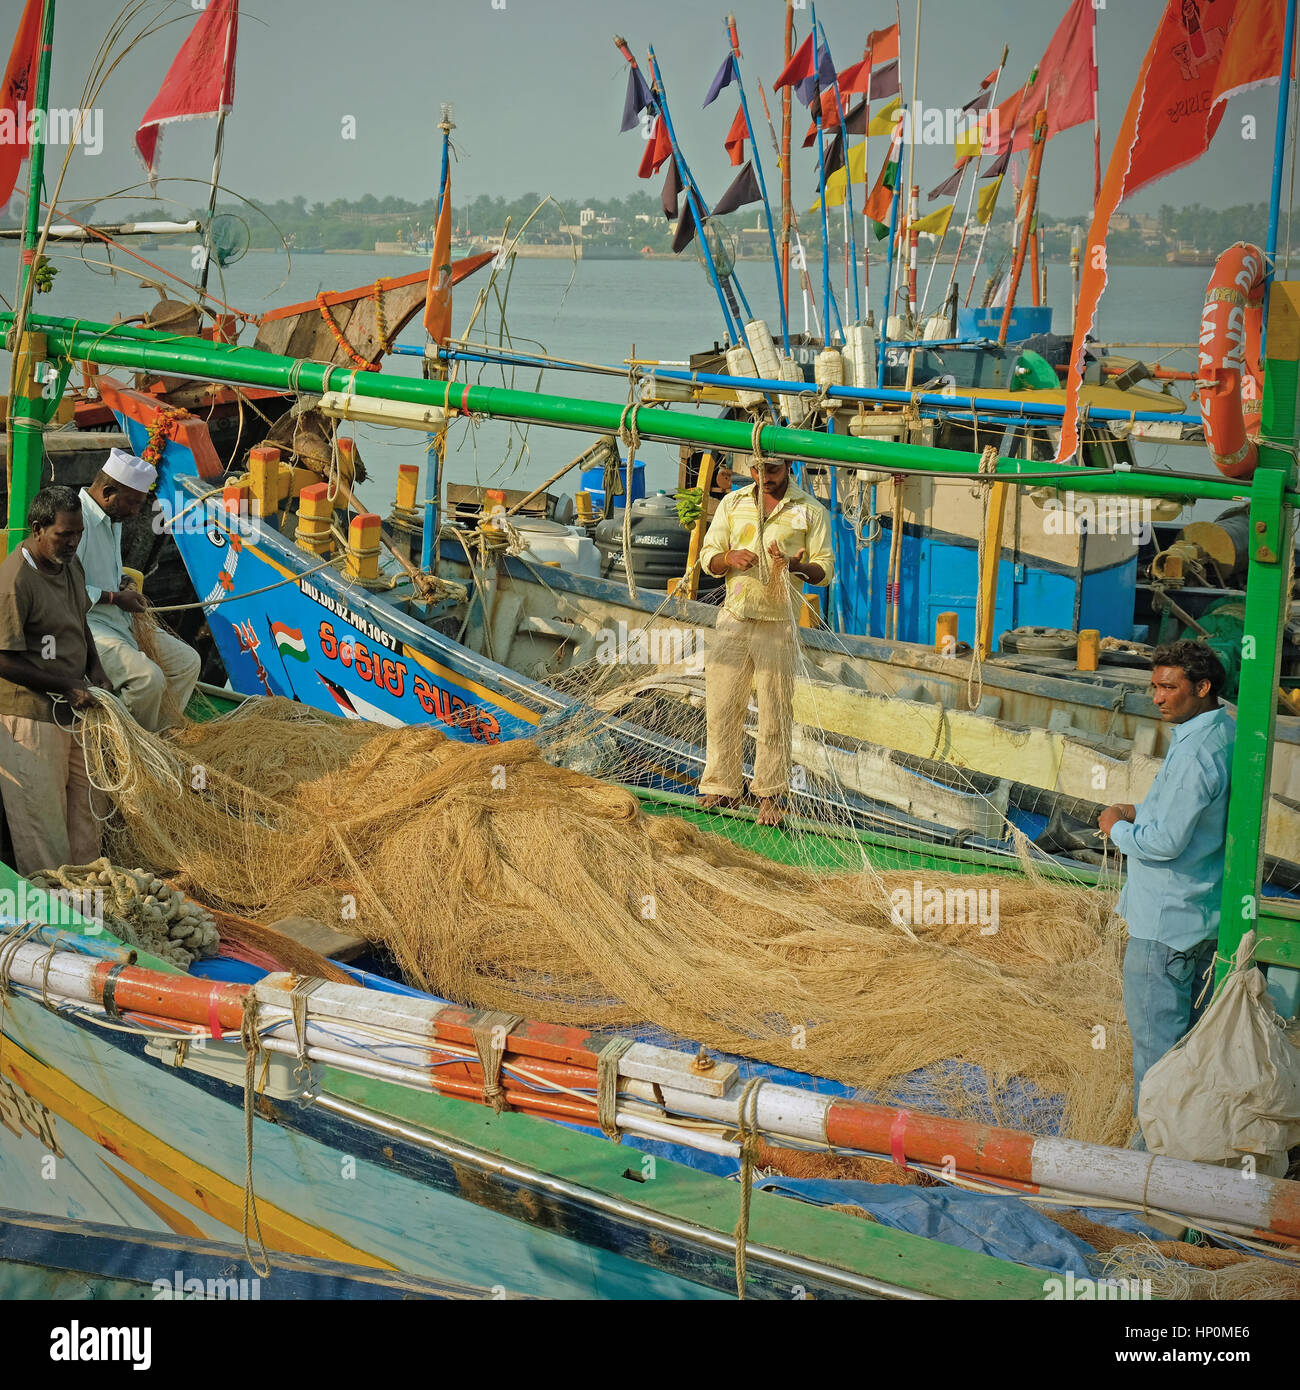 Moustiquaires sont vérifiés à bord de bateaux de pêche au port sur l'île de Diu, Inde. La pêche dans la mer d'Oman est un pilier de l'économie locale Banque D'Images